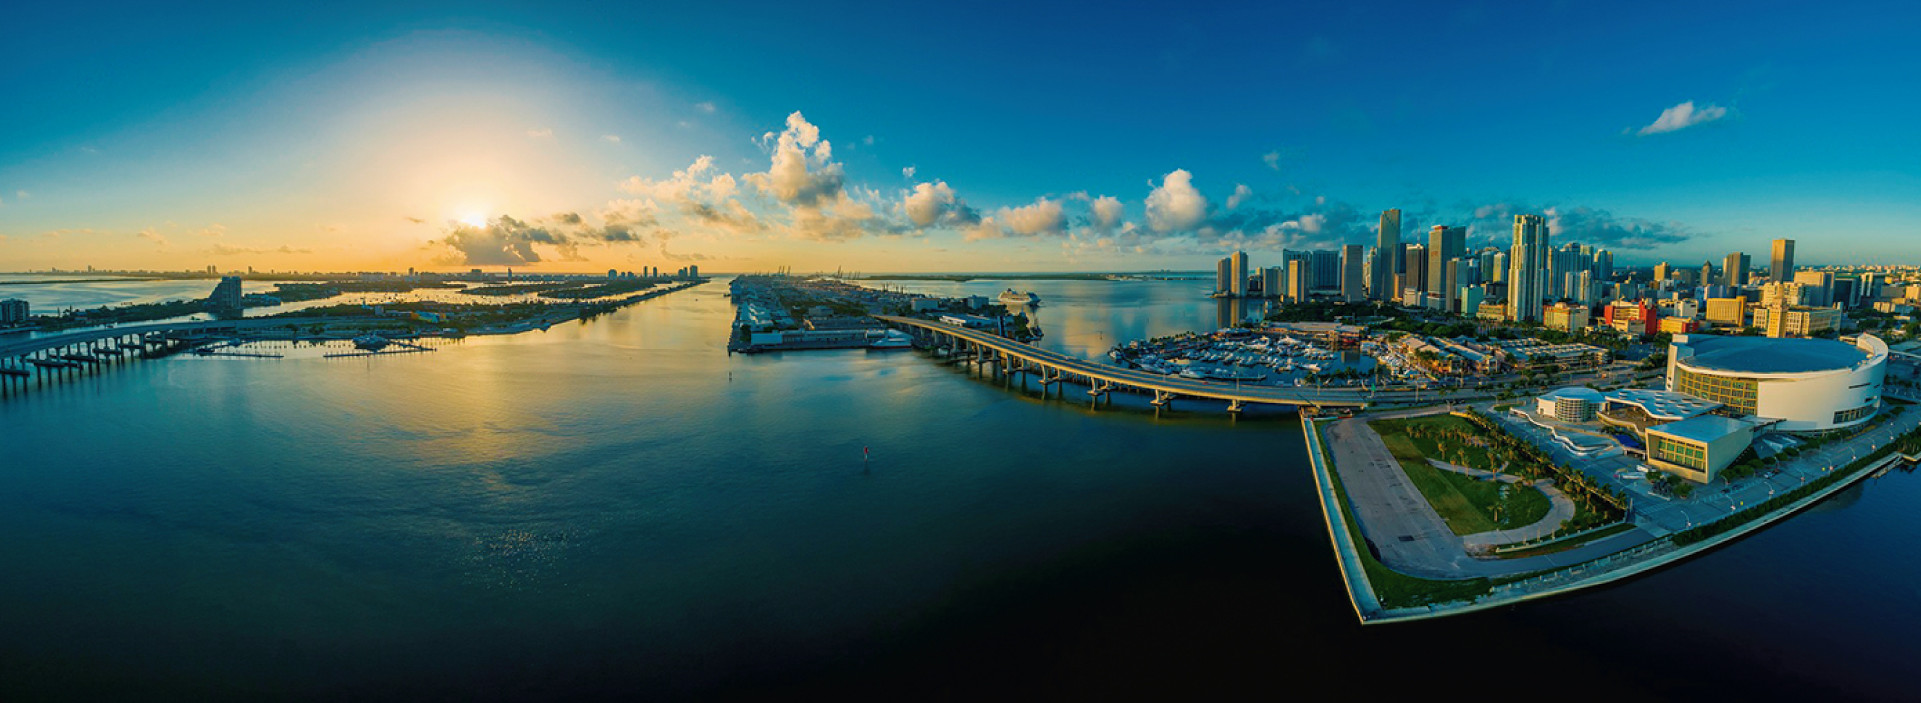 Miami: mercado inmobiliario favorable para la inversión extranjera : Inmobiliare